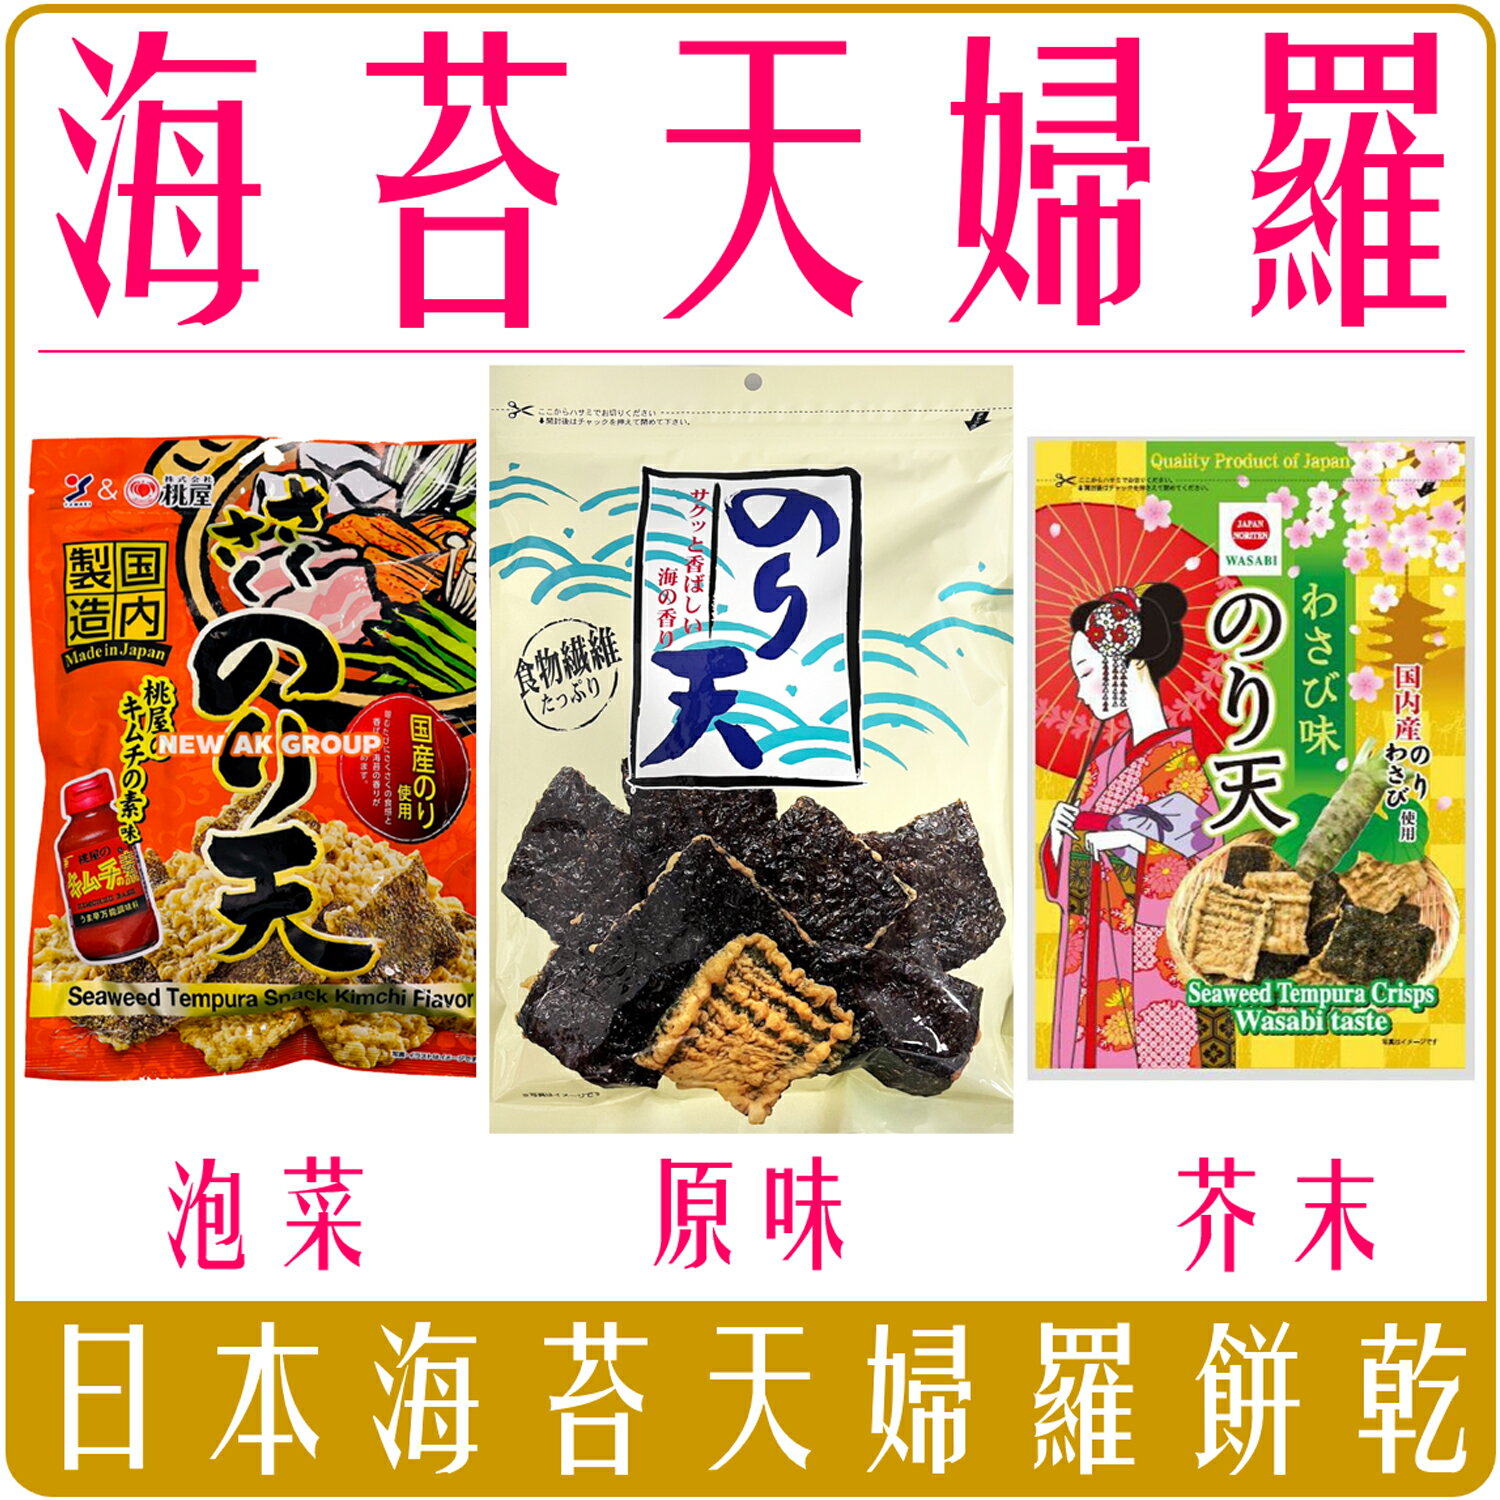 《 Chara 微百貨 》附發票 日本 丸嘉 海苔 天婦羅 紫菜餅乾 原味 芥末風味 酥脆 團購 夾鏈袋